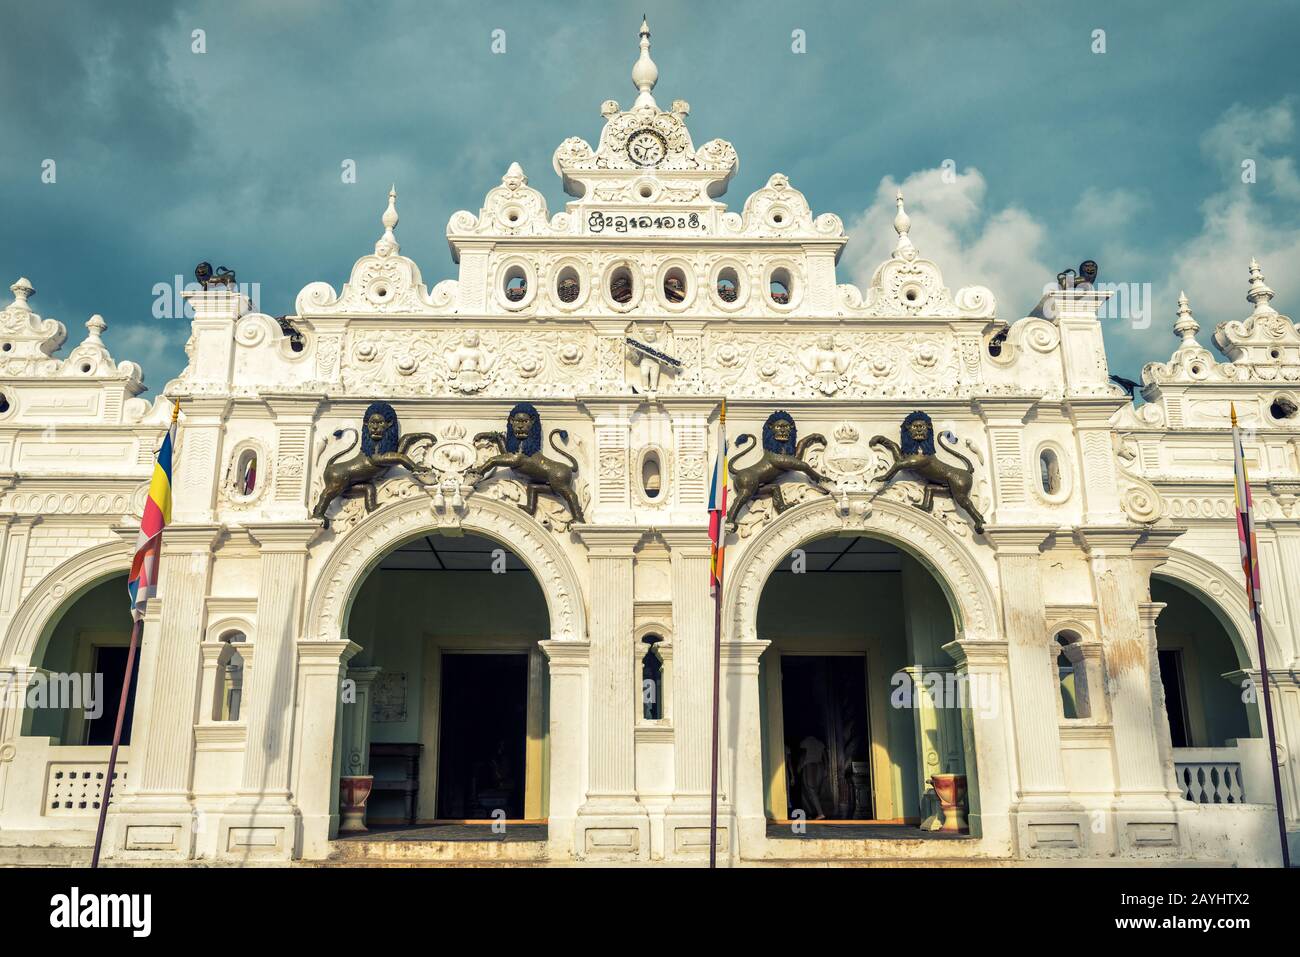 Facciata del tempio di Wewurukannala Vihara nella città di Dickwella, Sri Lanka. Questo è il vecchio tempio buddista. Foto Stock